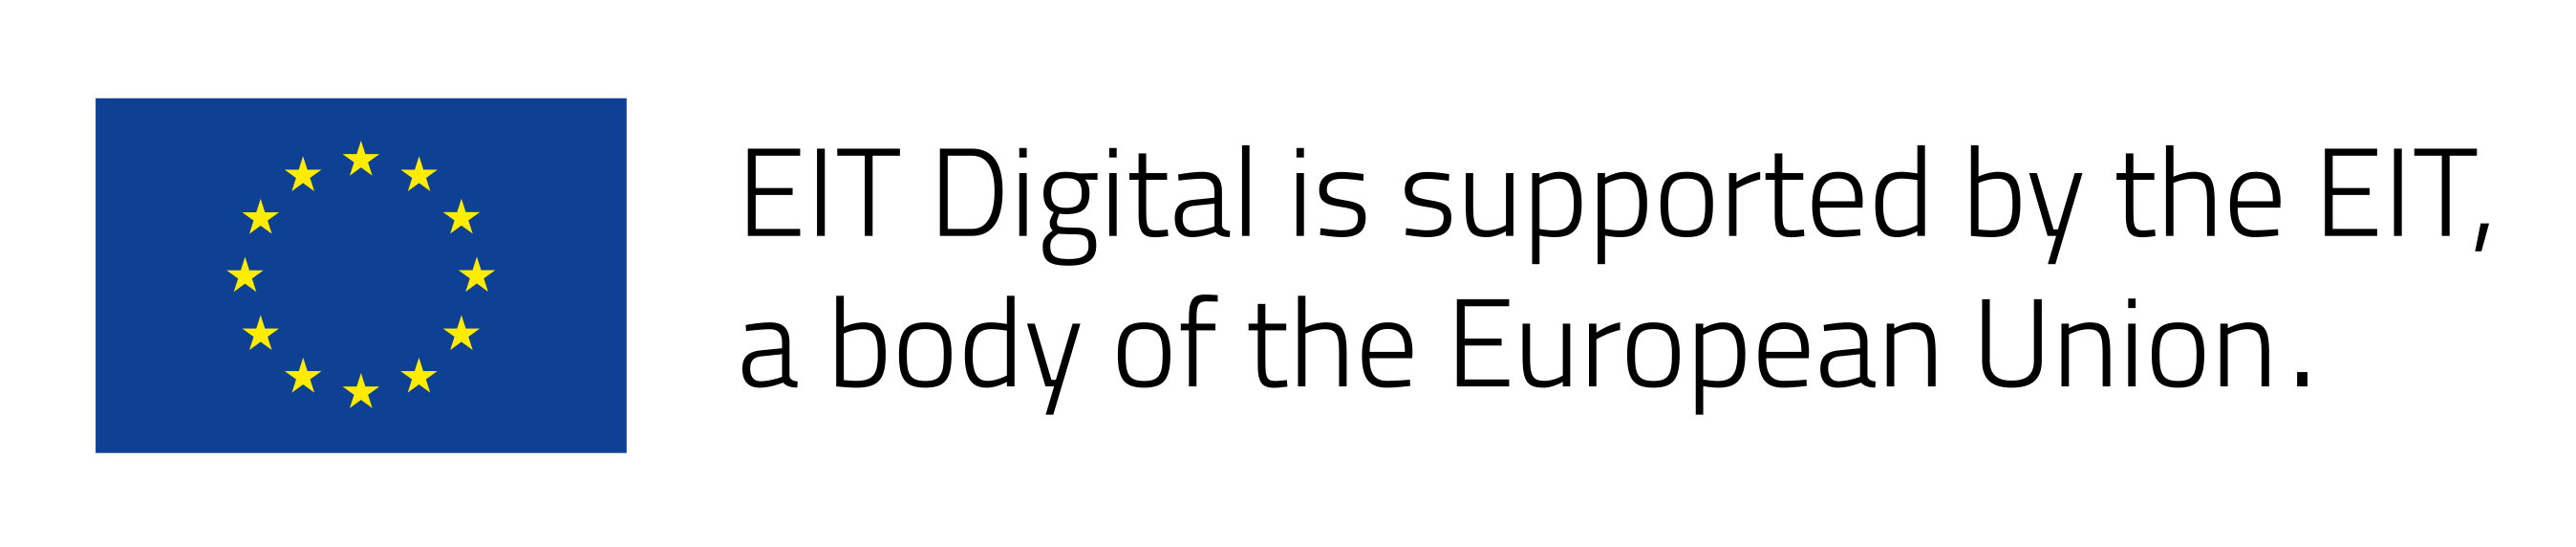 EIT Digital Logo